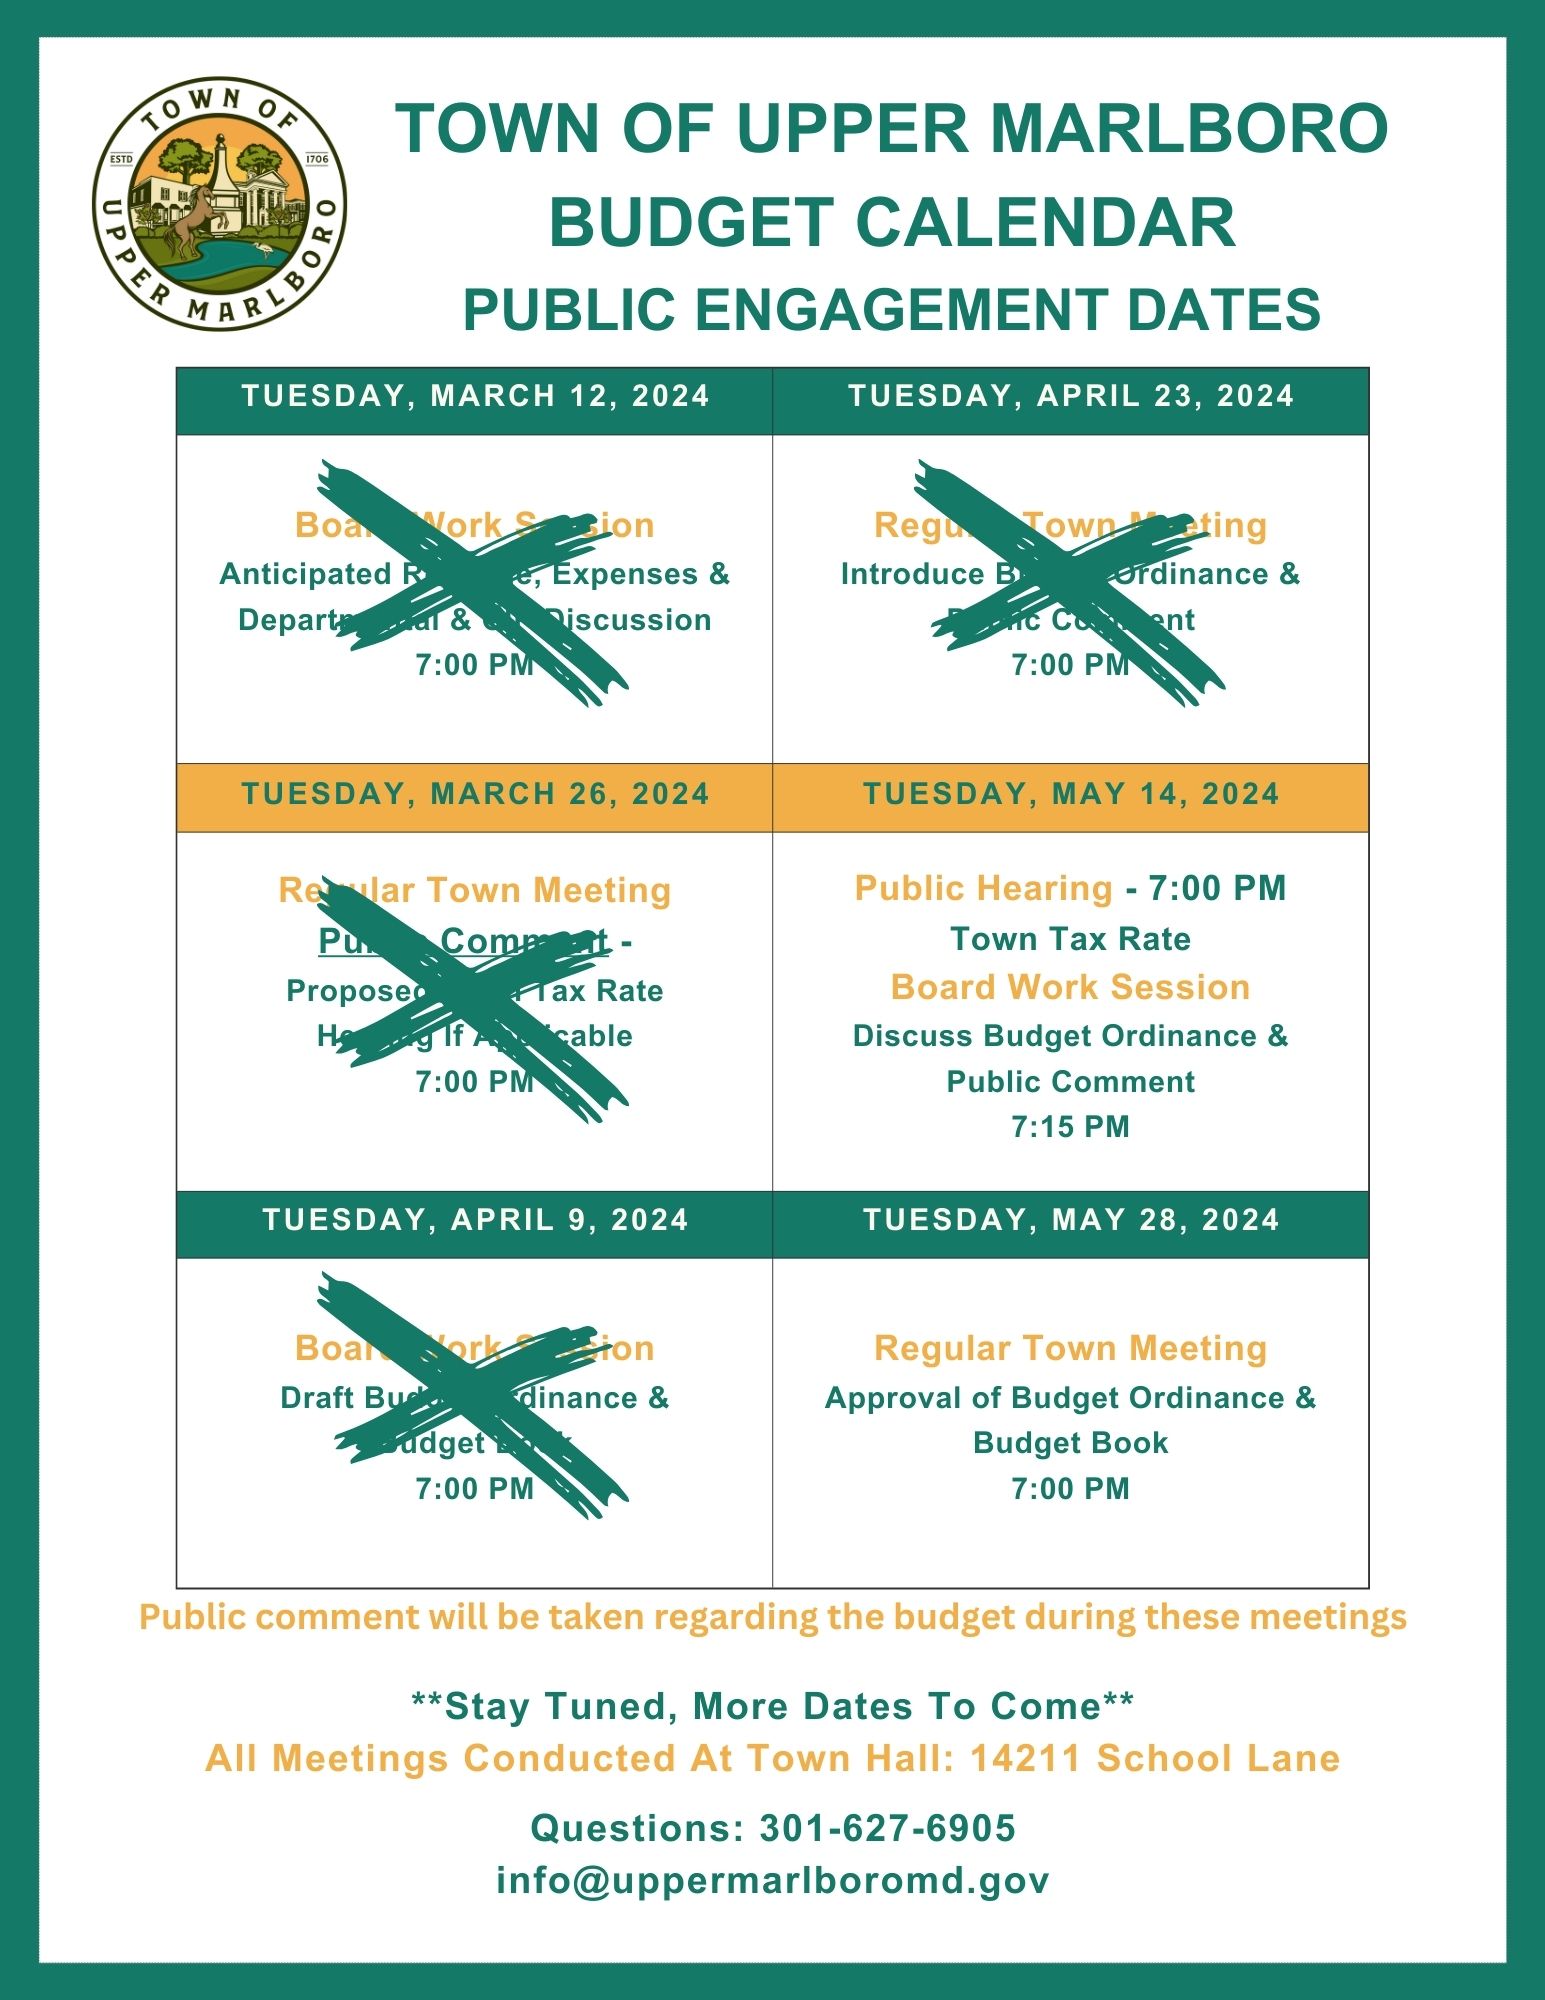 Public Engagement Dates